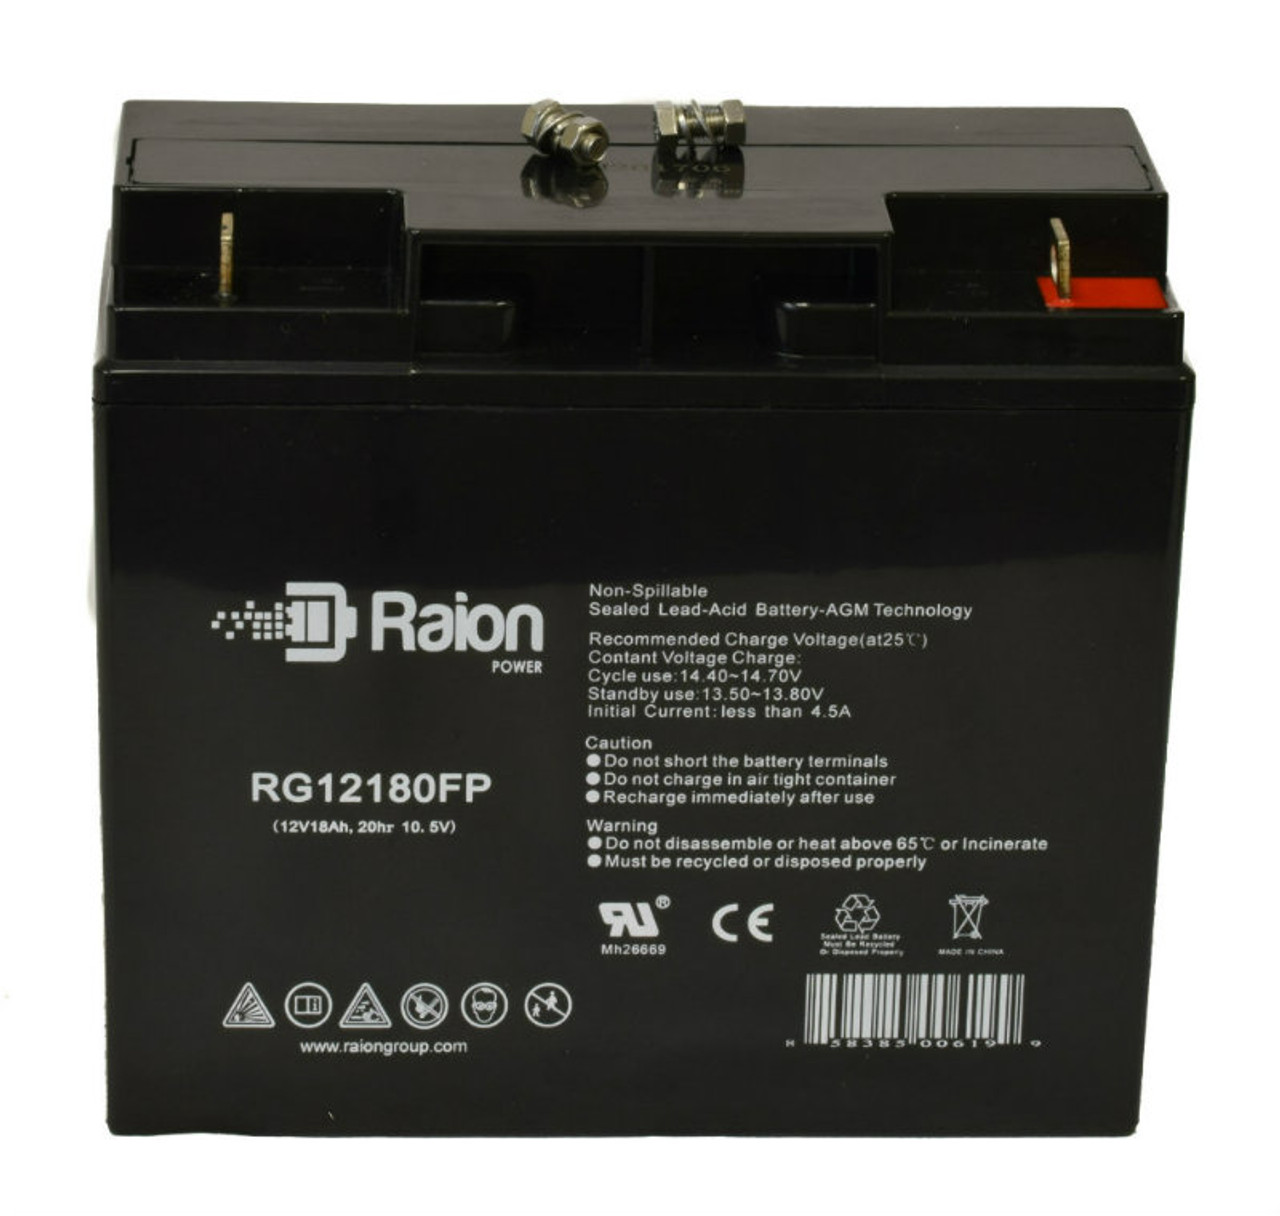 Raion Power RG12180FP 12V 18Ah Lead Acid Battery for Volt Canada Stealth